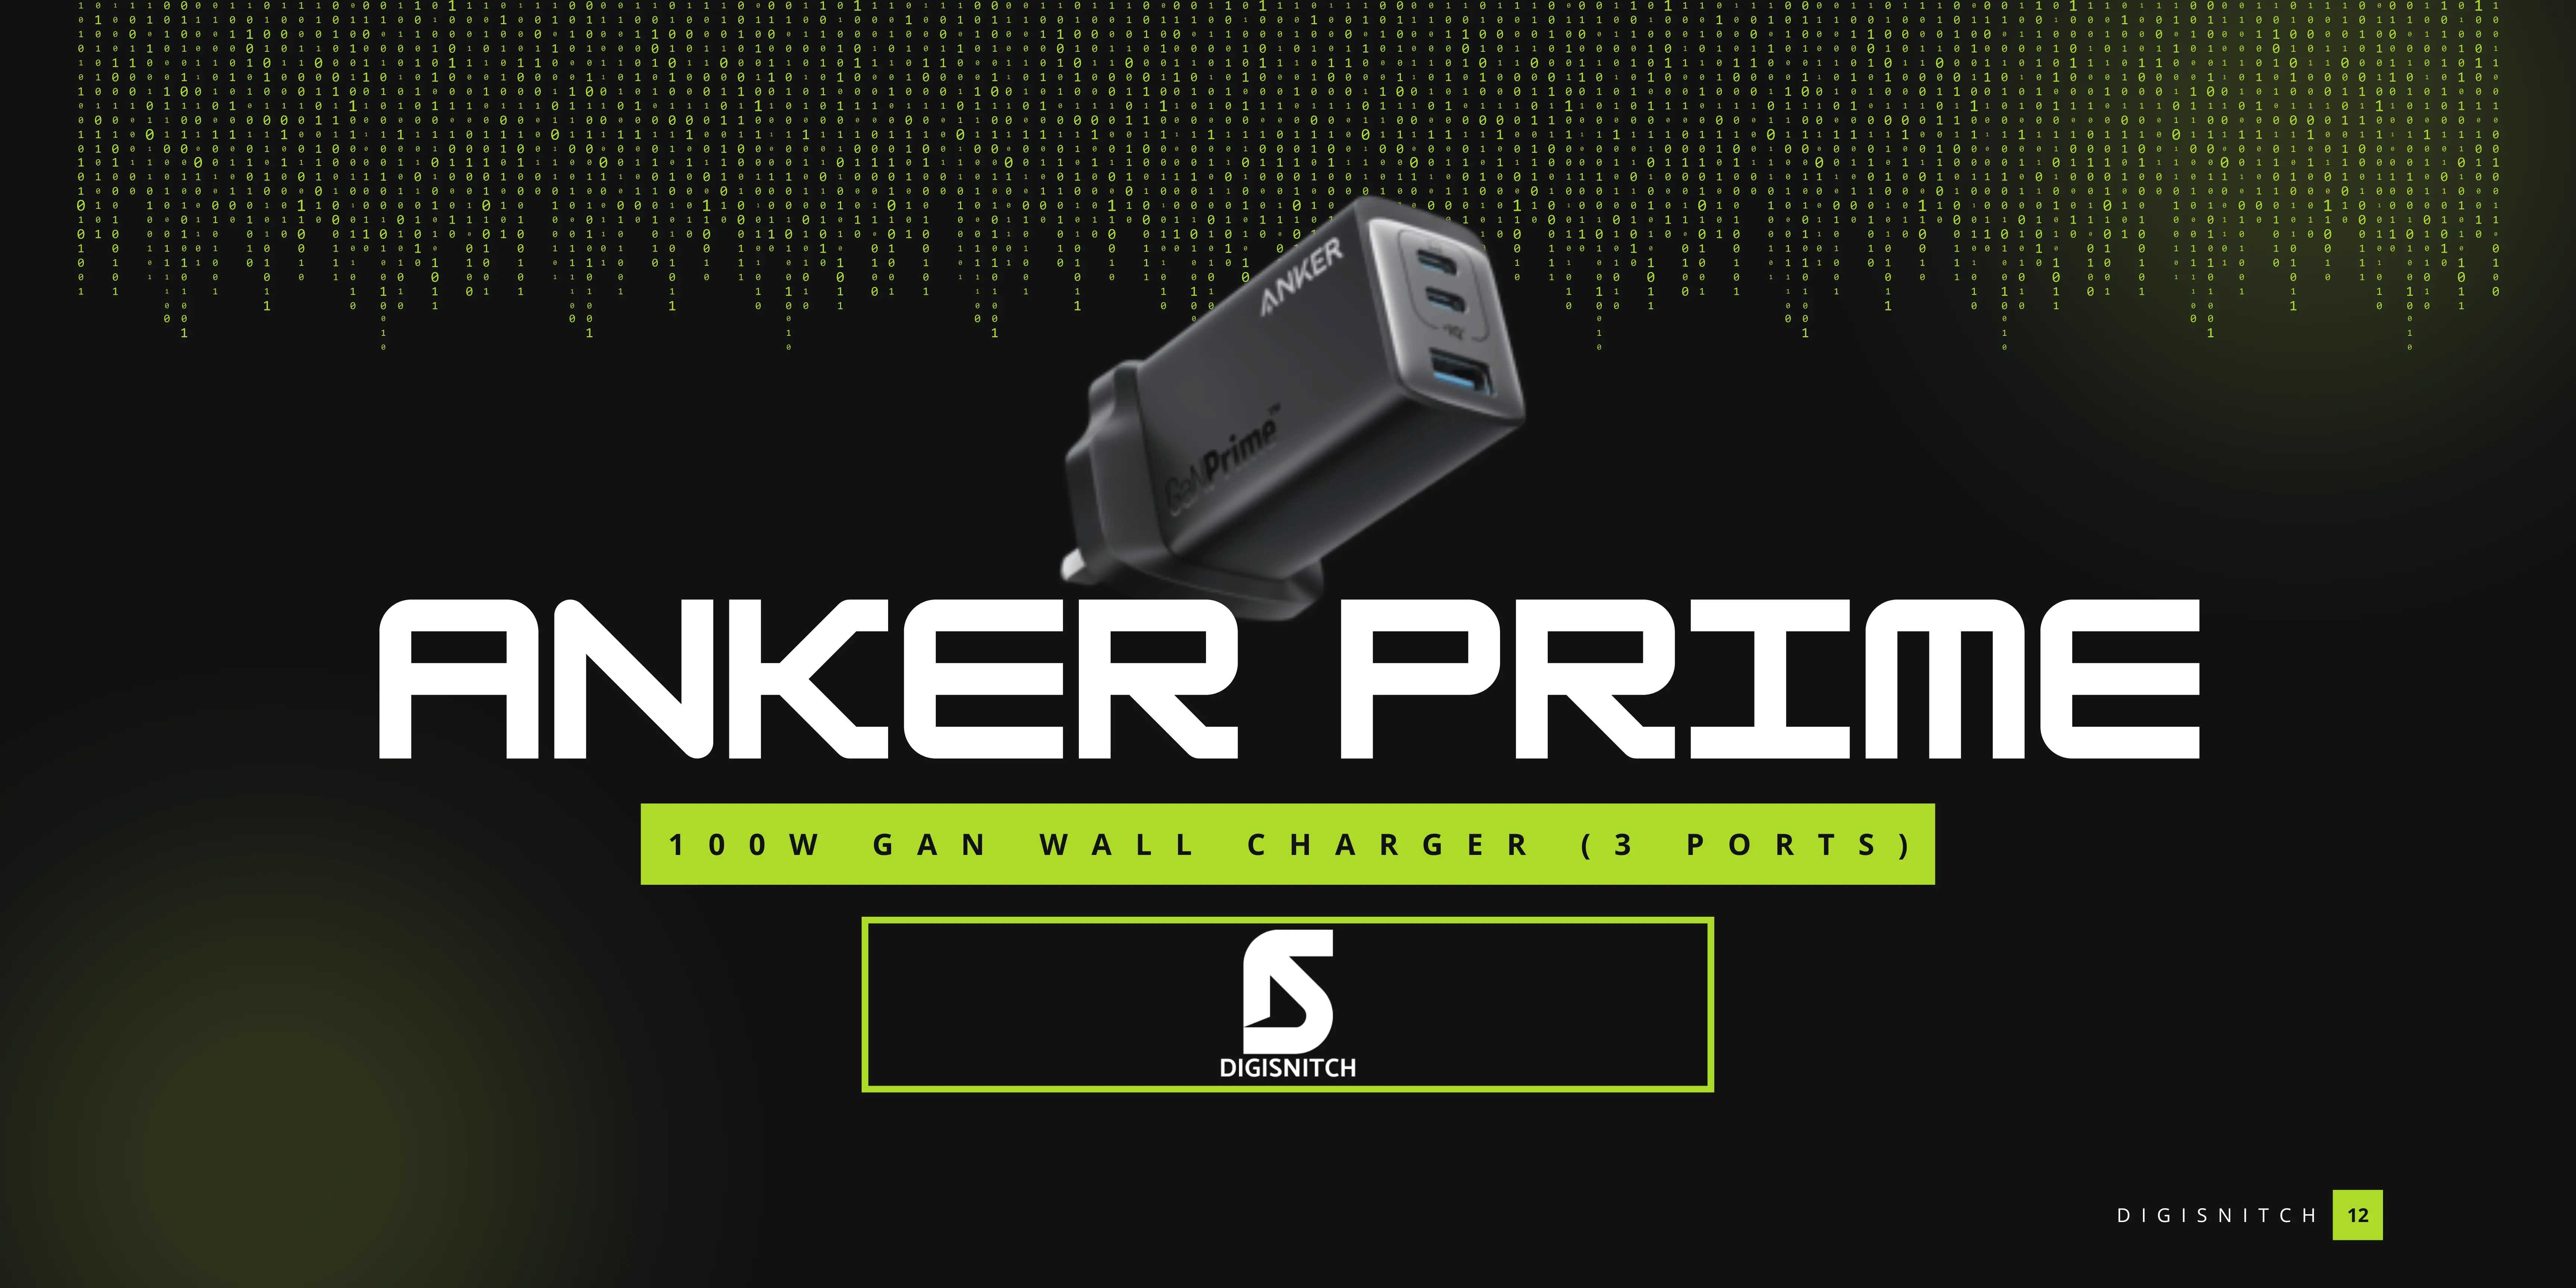 Anker Prime